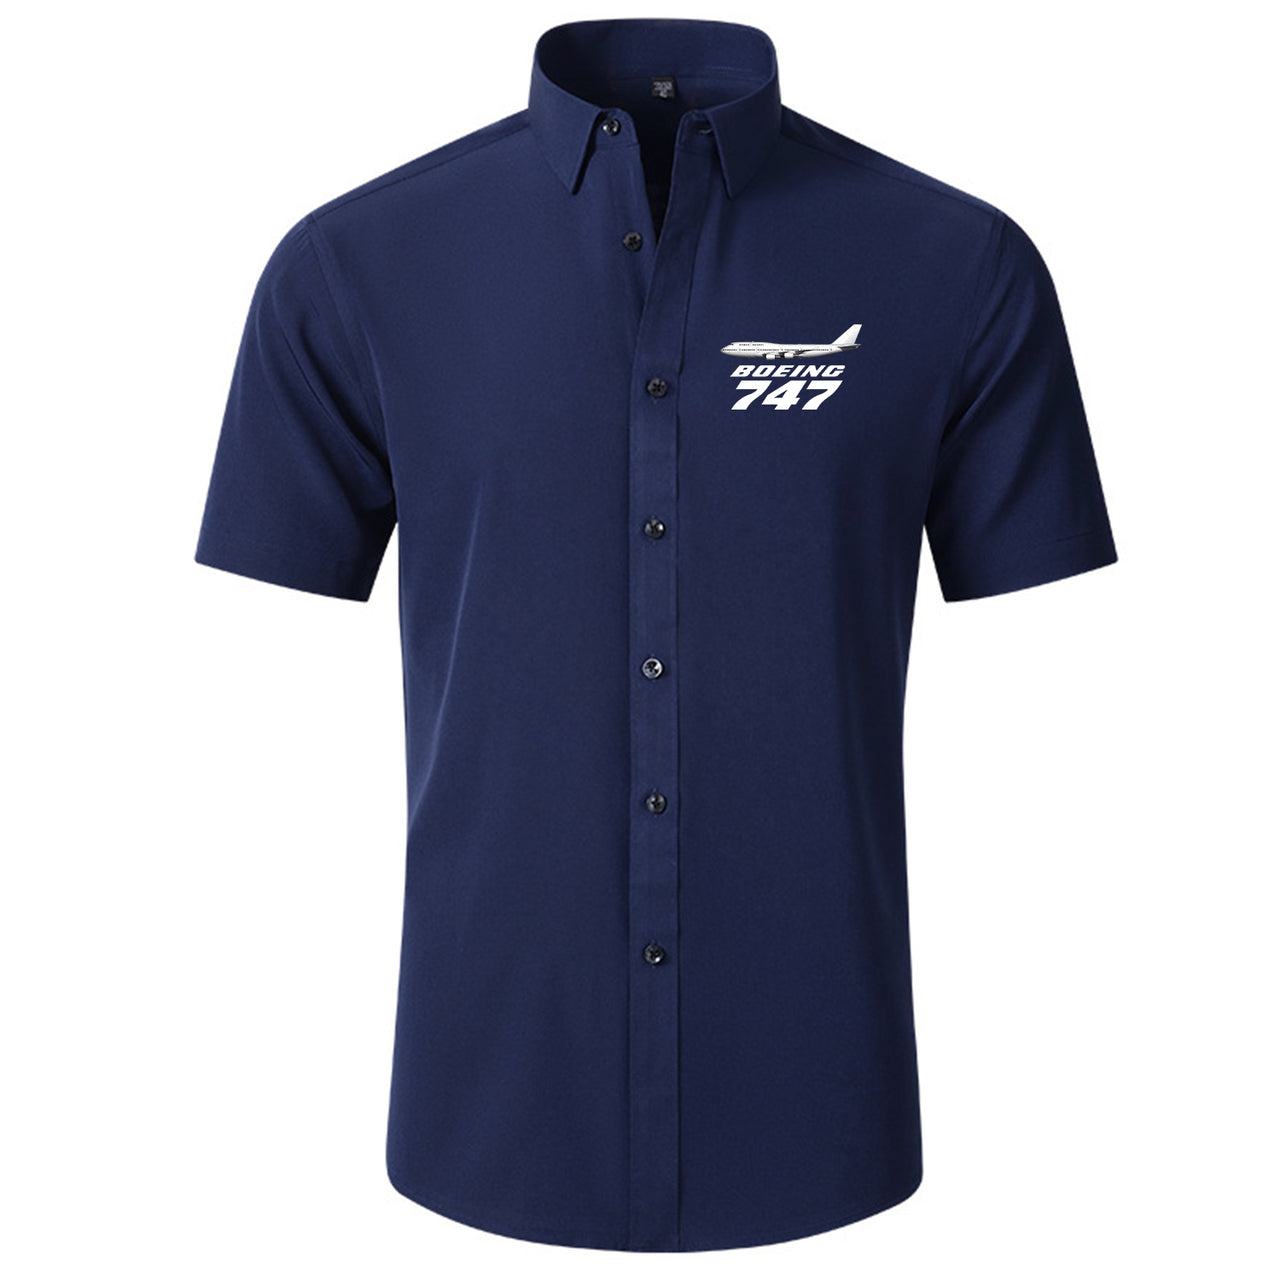 The Boeing 747 Designed Short Sleeve Shirts